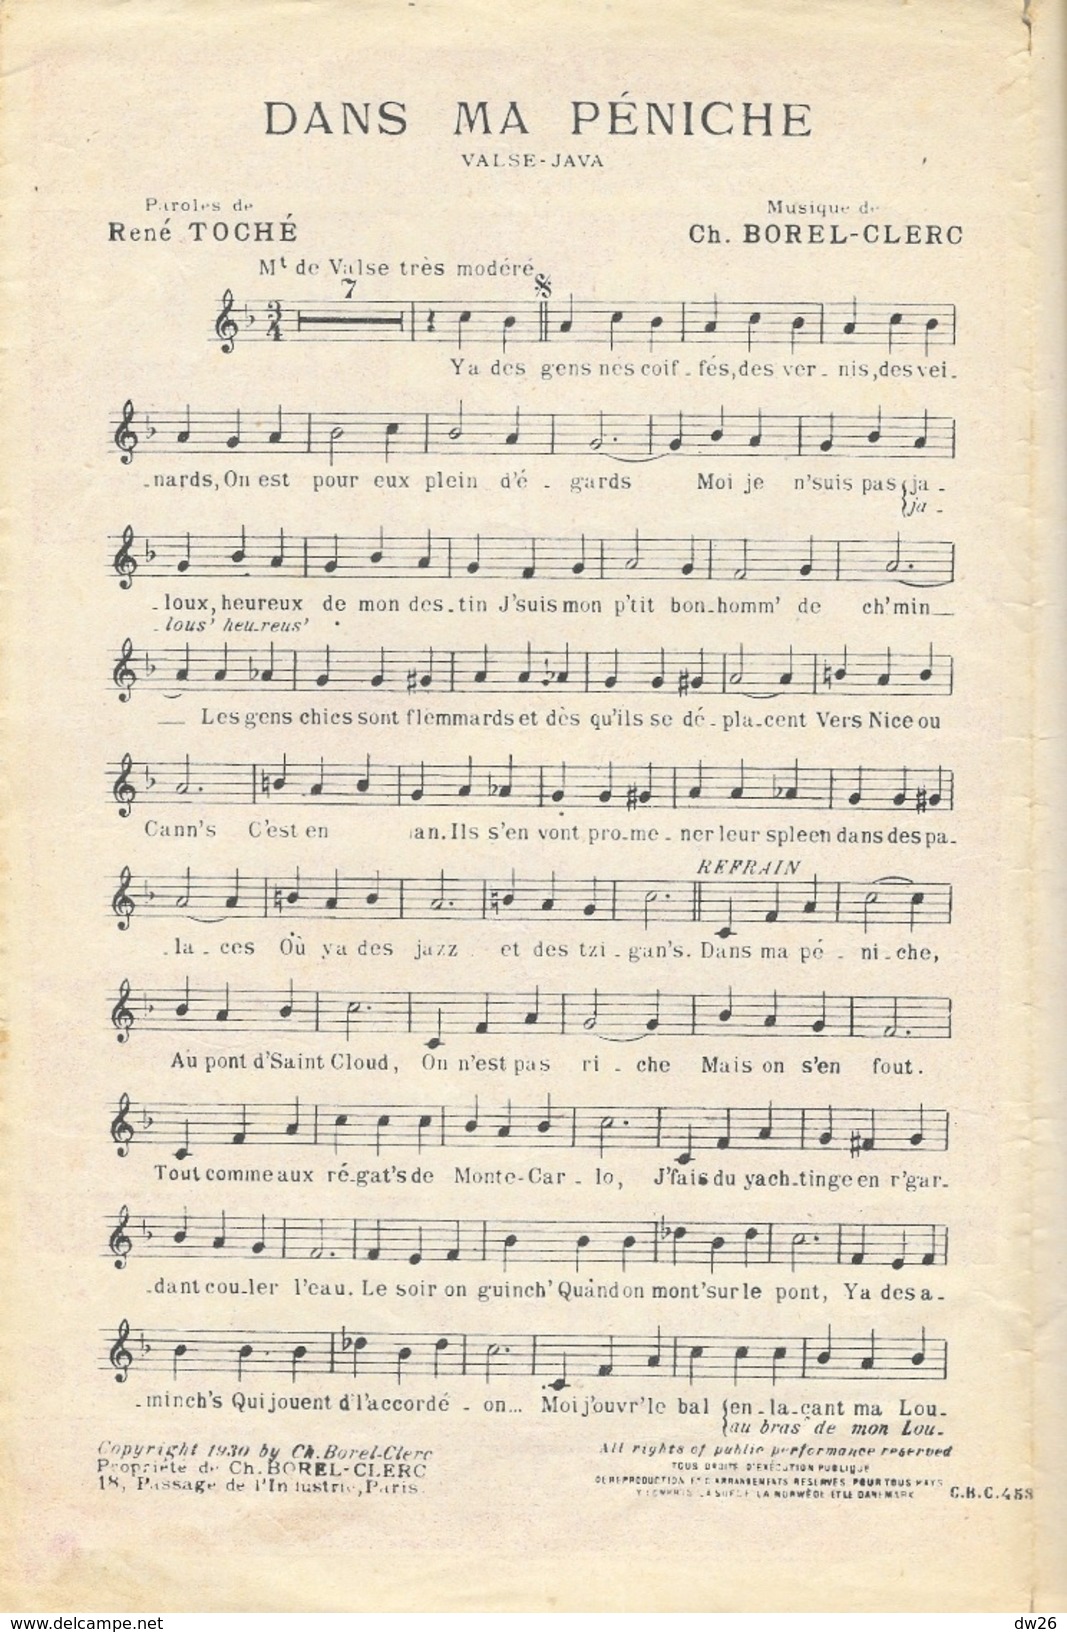 Partition: Dans Ma Péniche (Valse Java), Grand Succès De Jean Cyrano - Paroles De René Toche - Musique Ch. Borel-Clerc - Scores & Partitions